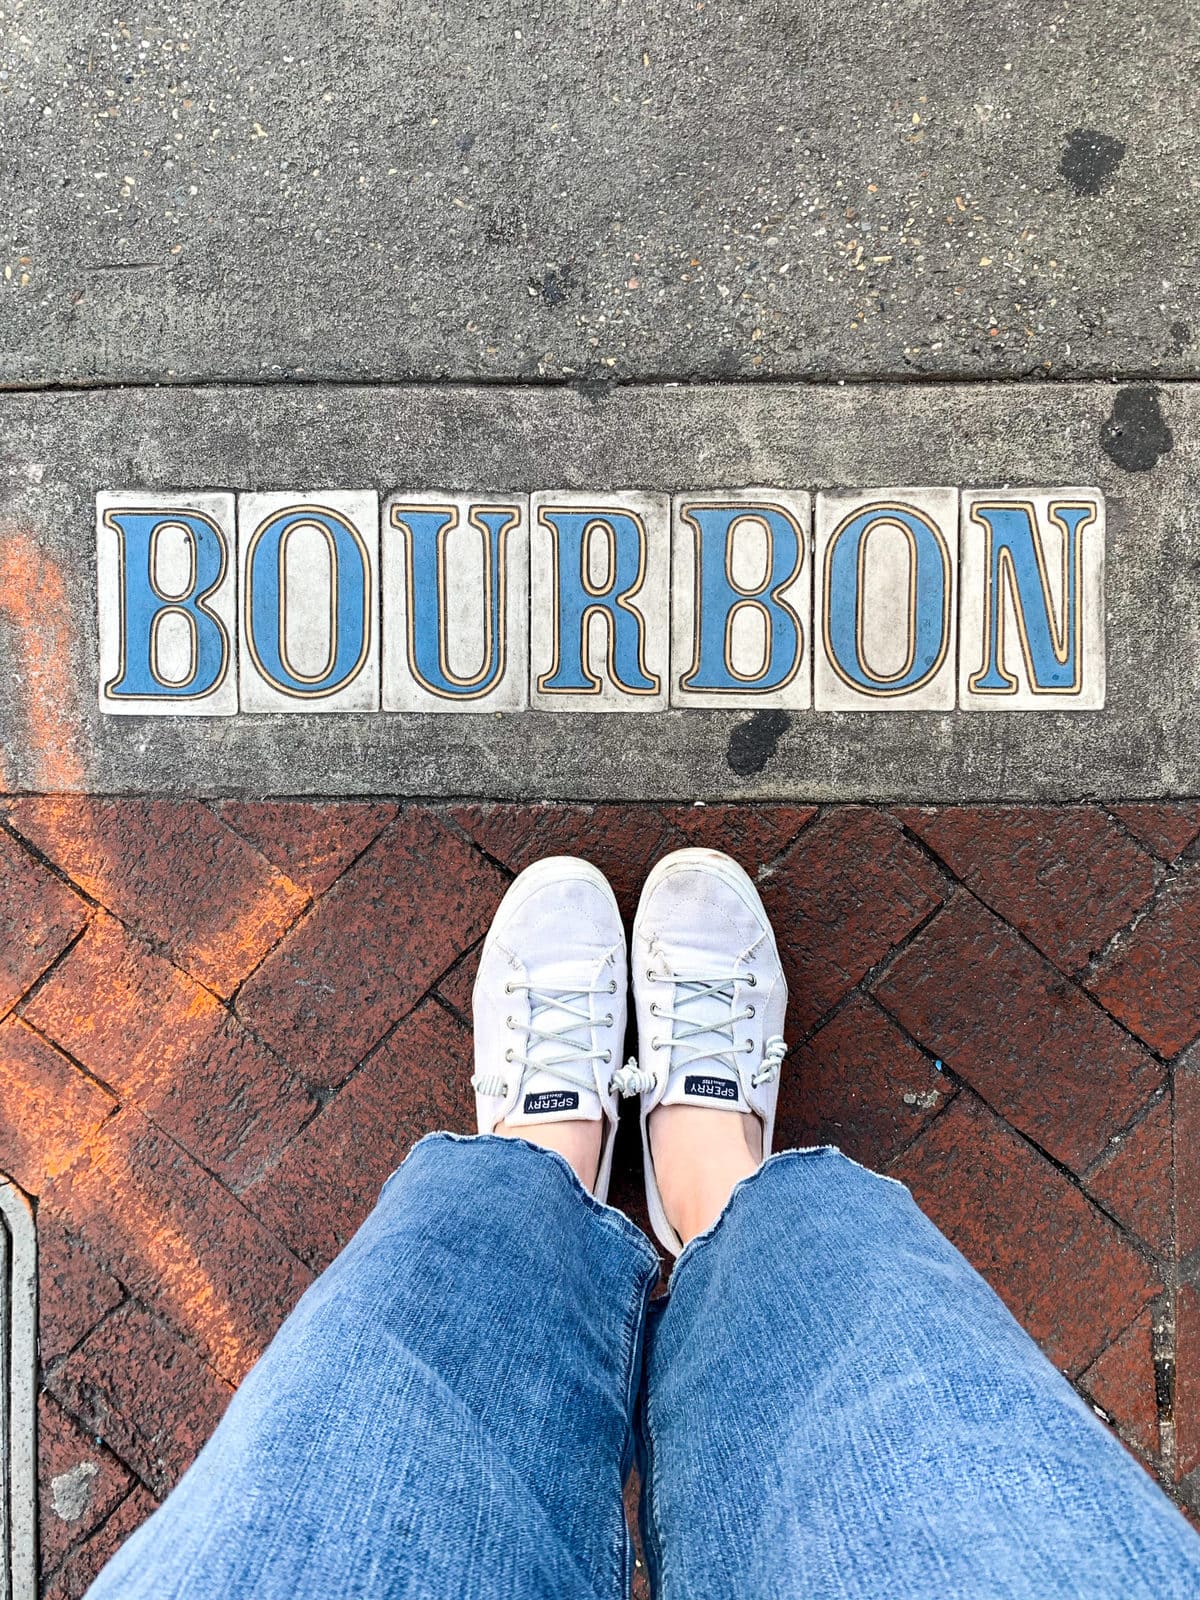 Bourbon Street Sign